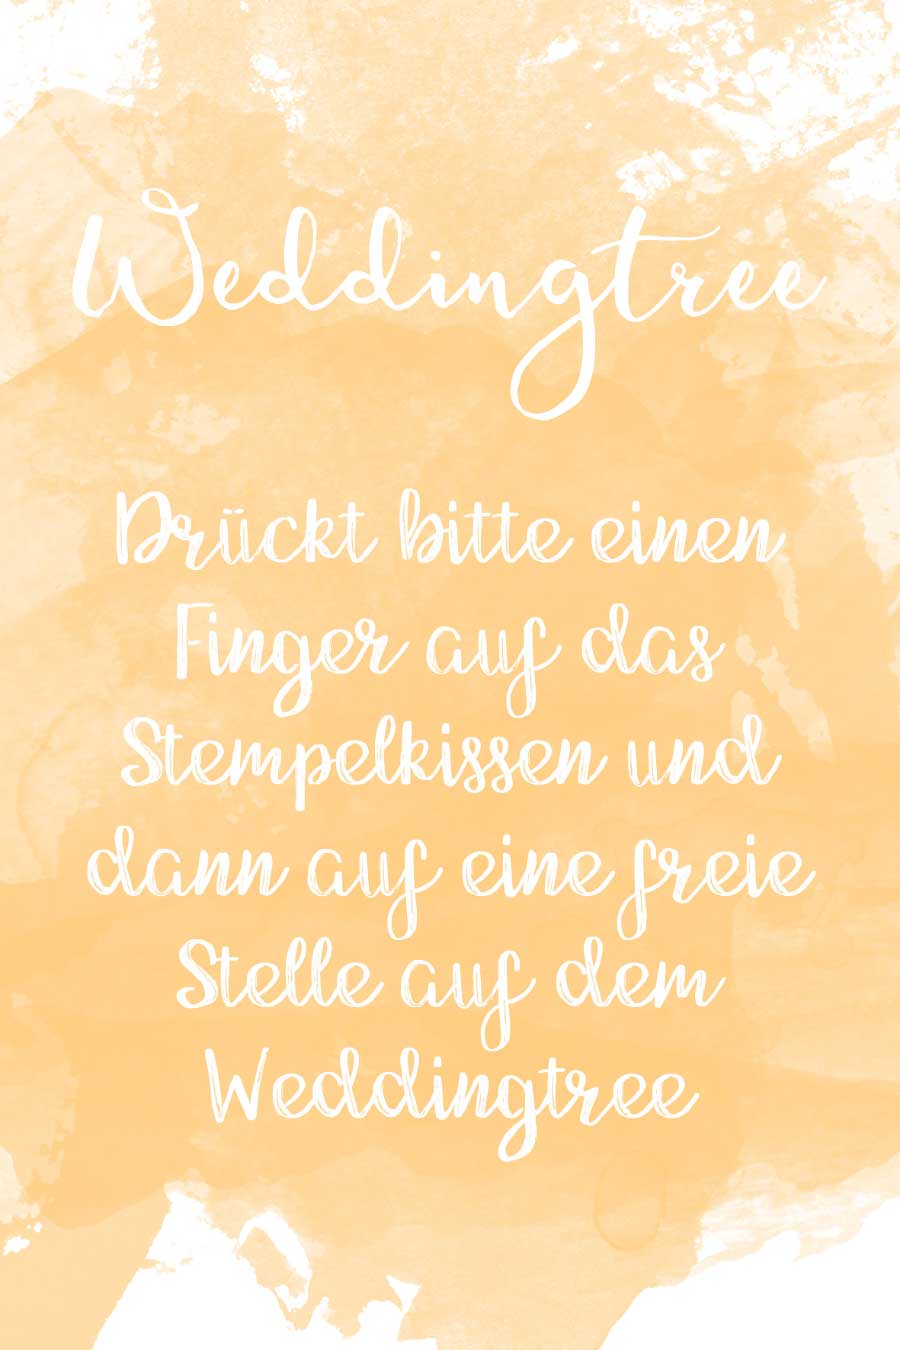 Weddingtree Schild in Wasserfarben-Optik kostenlos zum Download